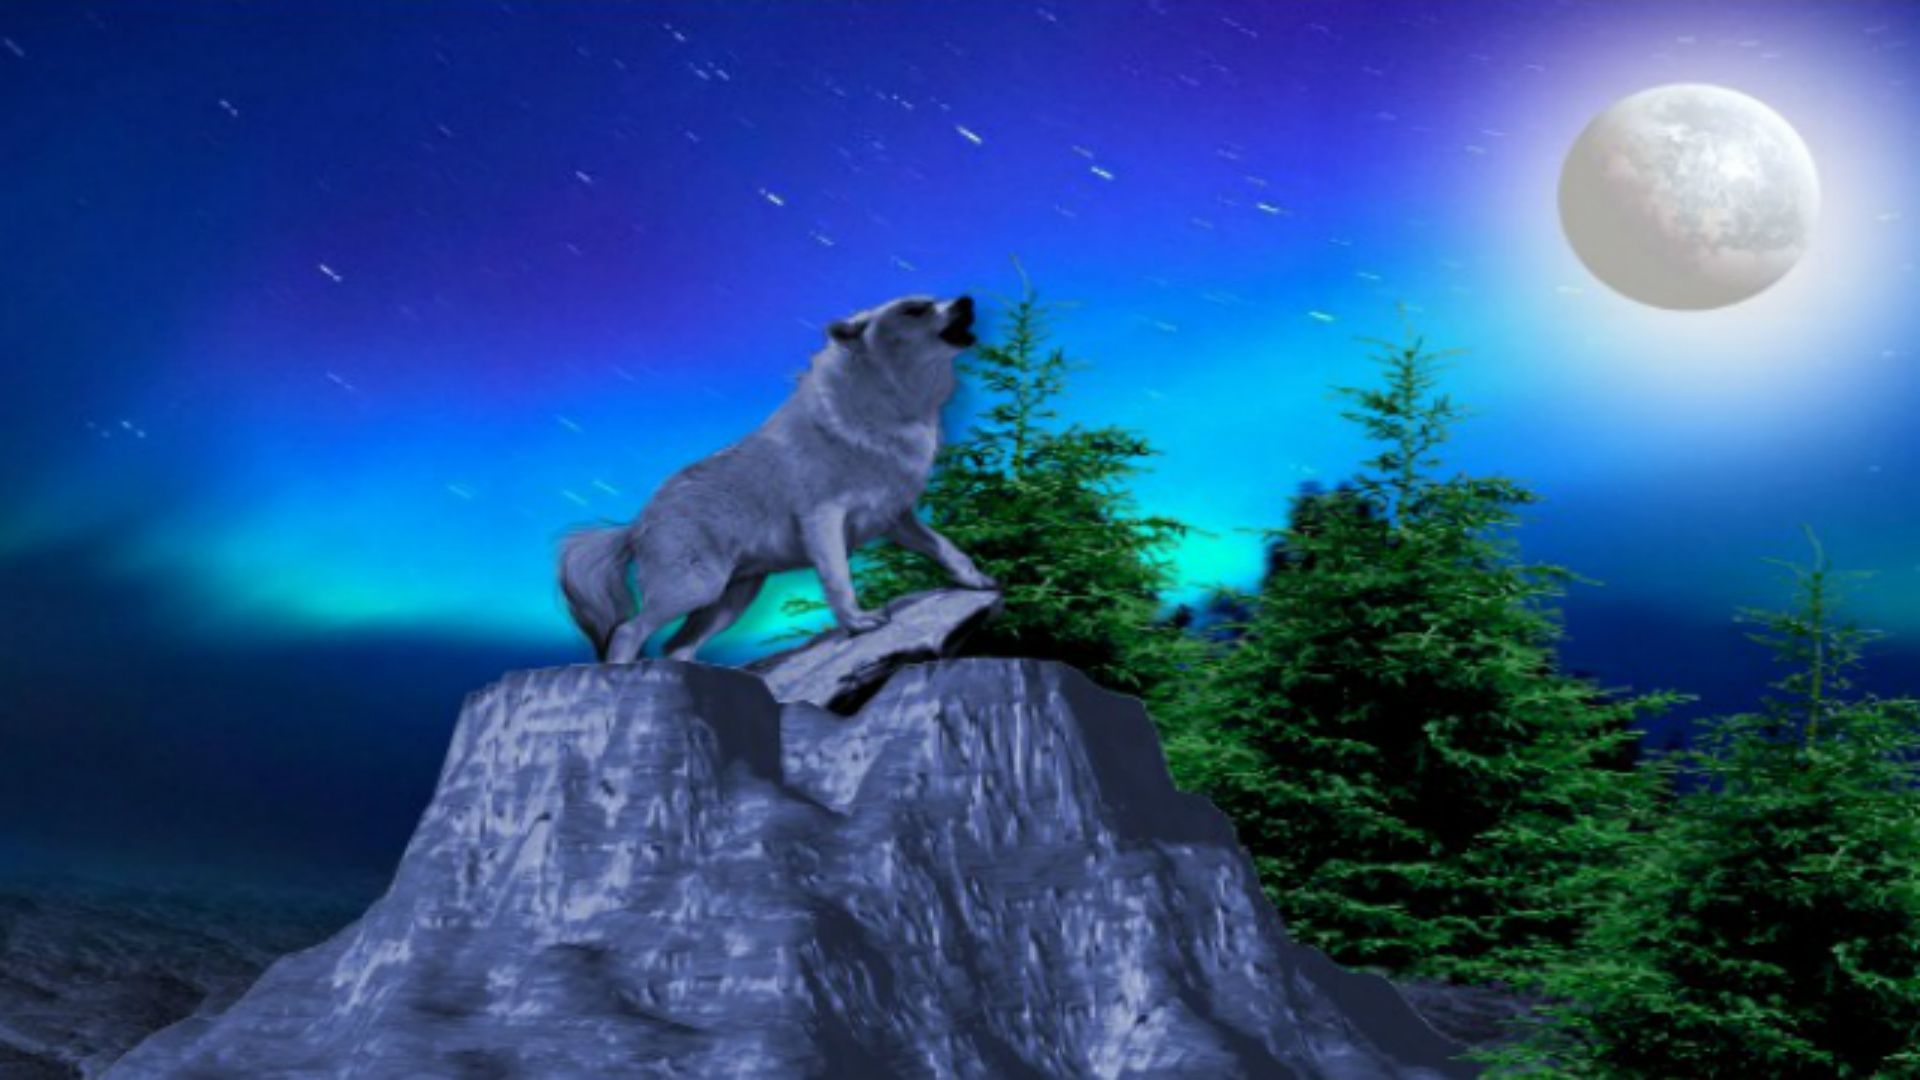 66 Wolf Howling At The Moon Wallpaper  WallpaperSafari